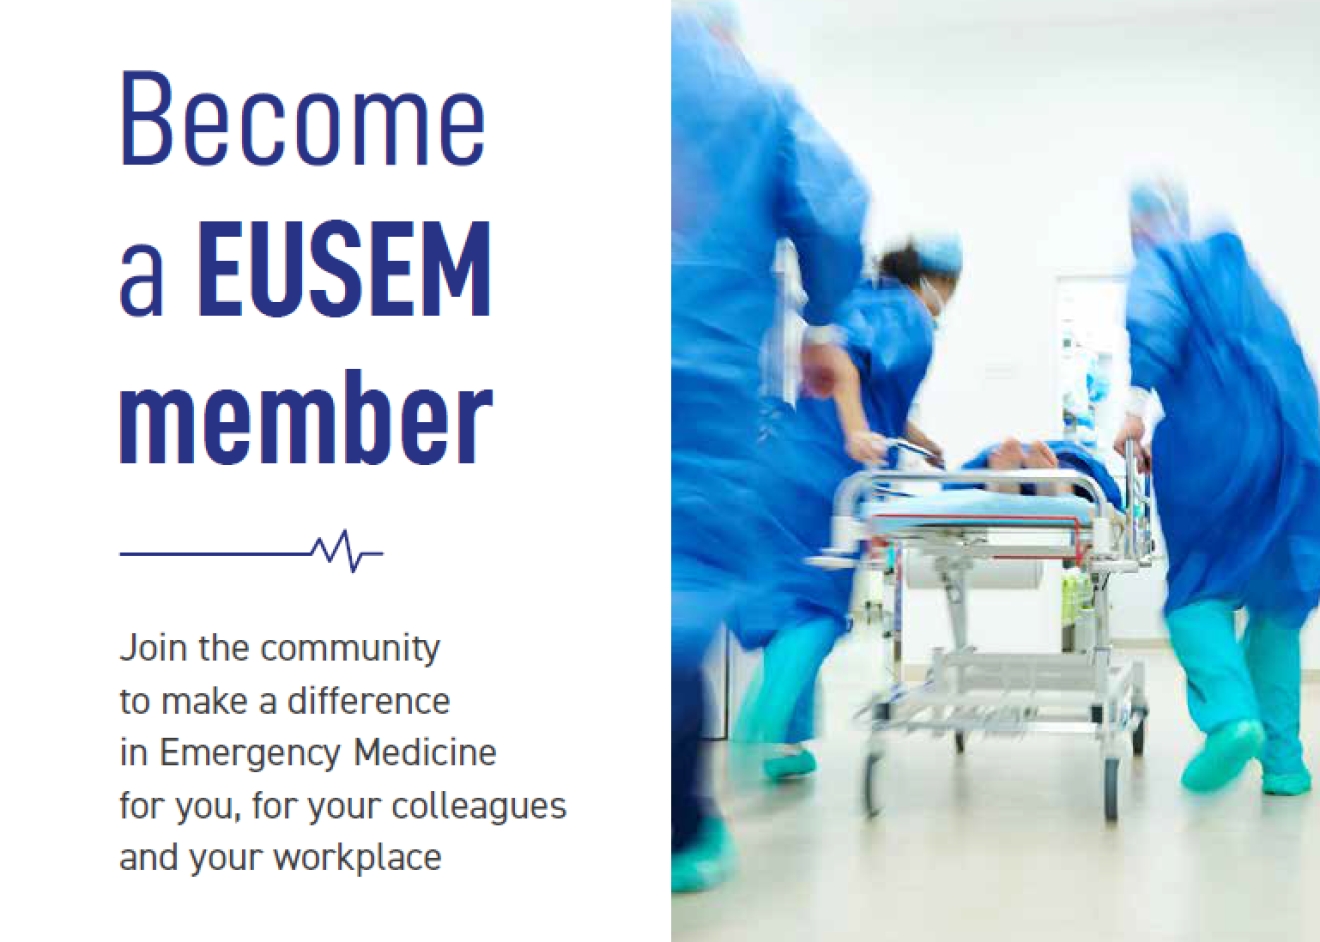 Become a EUSEM member